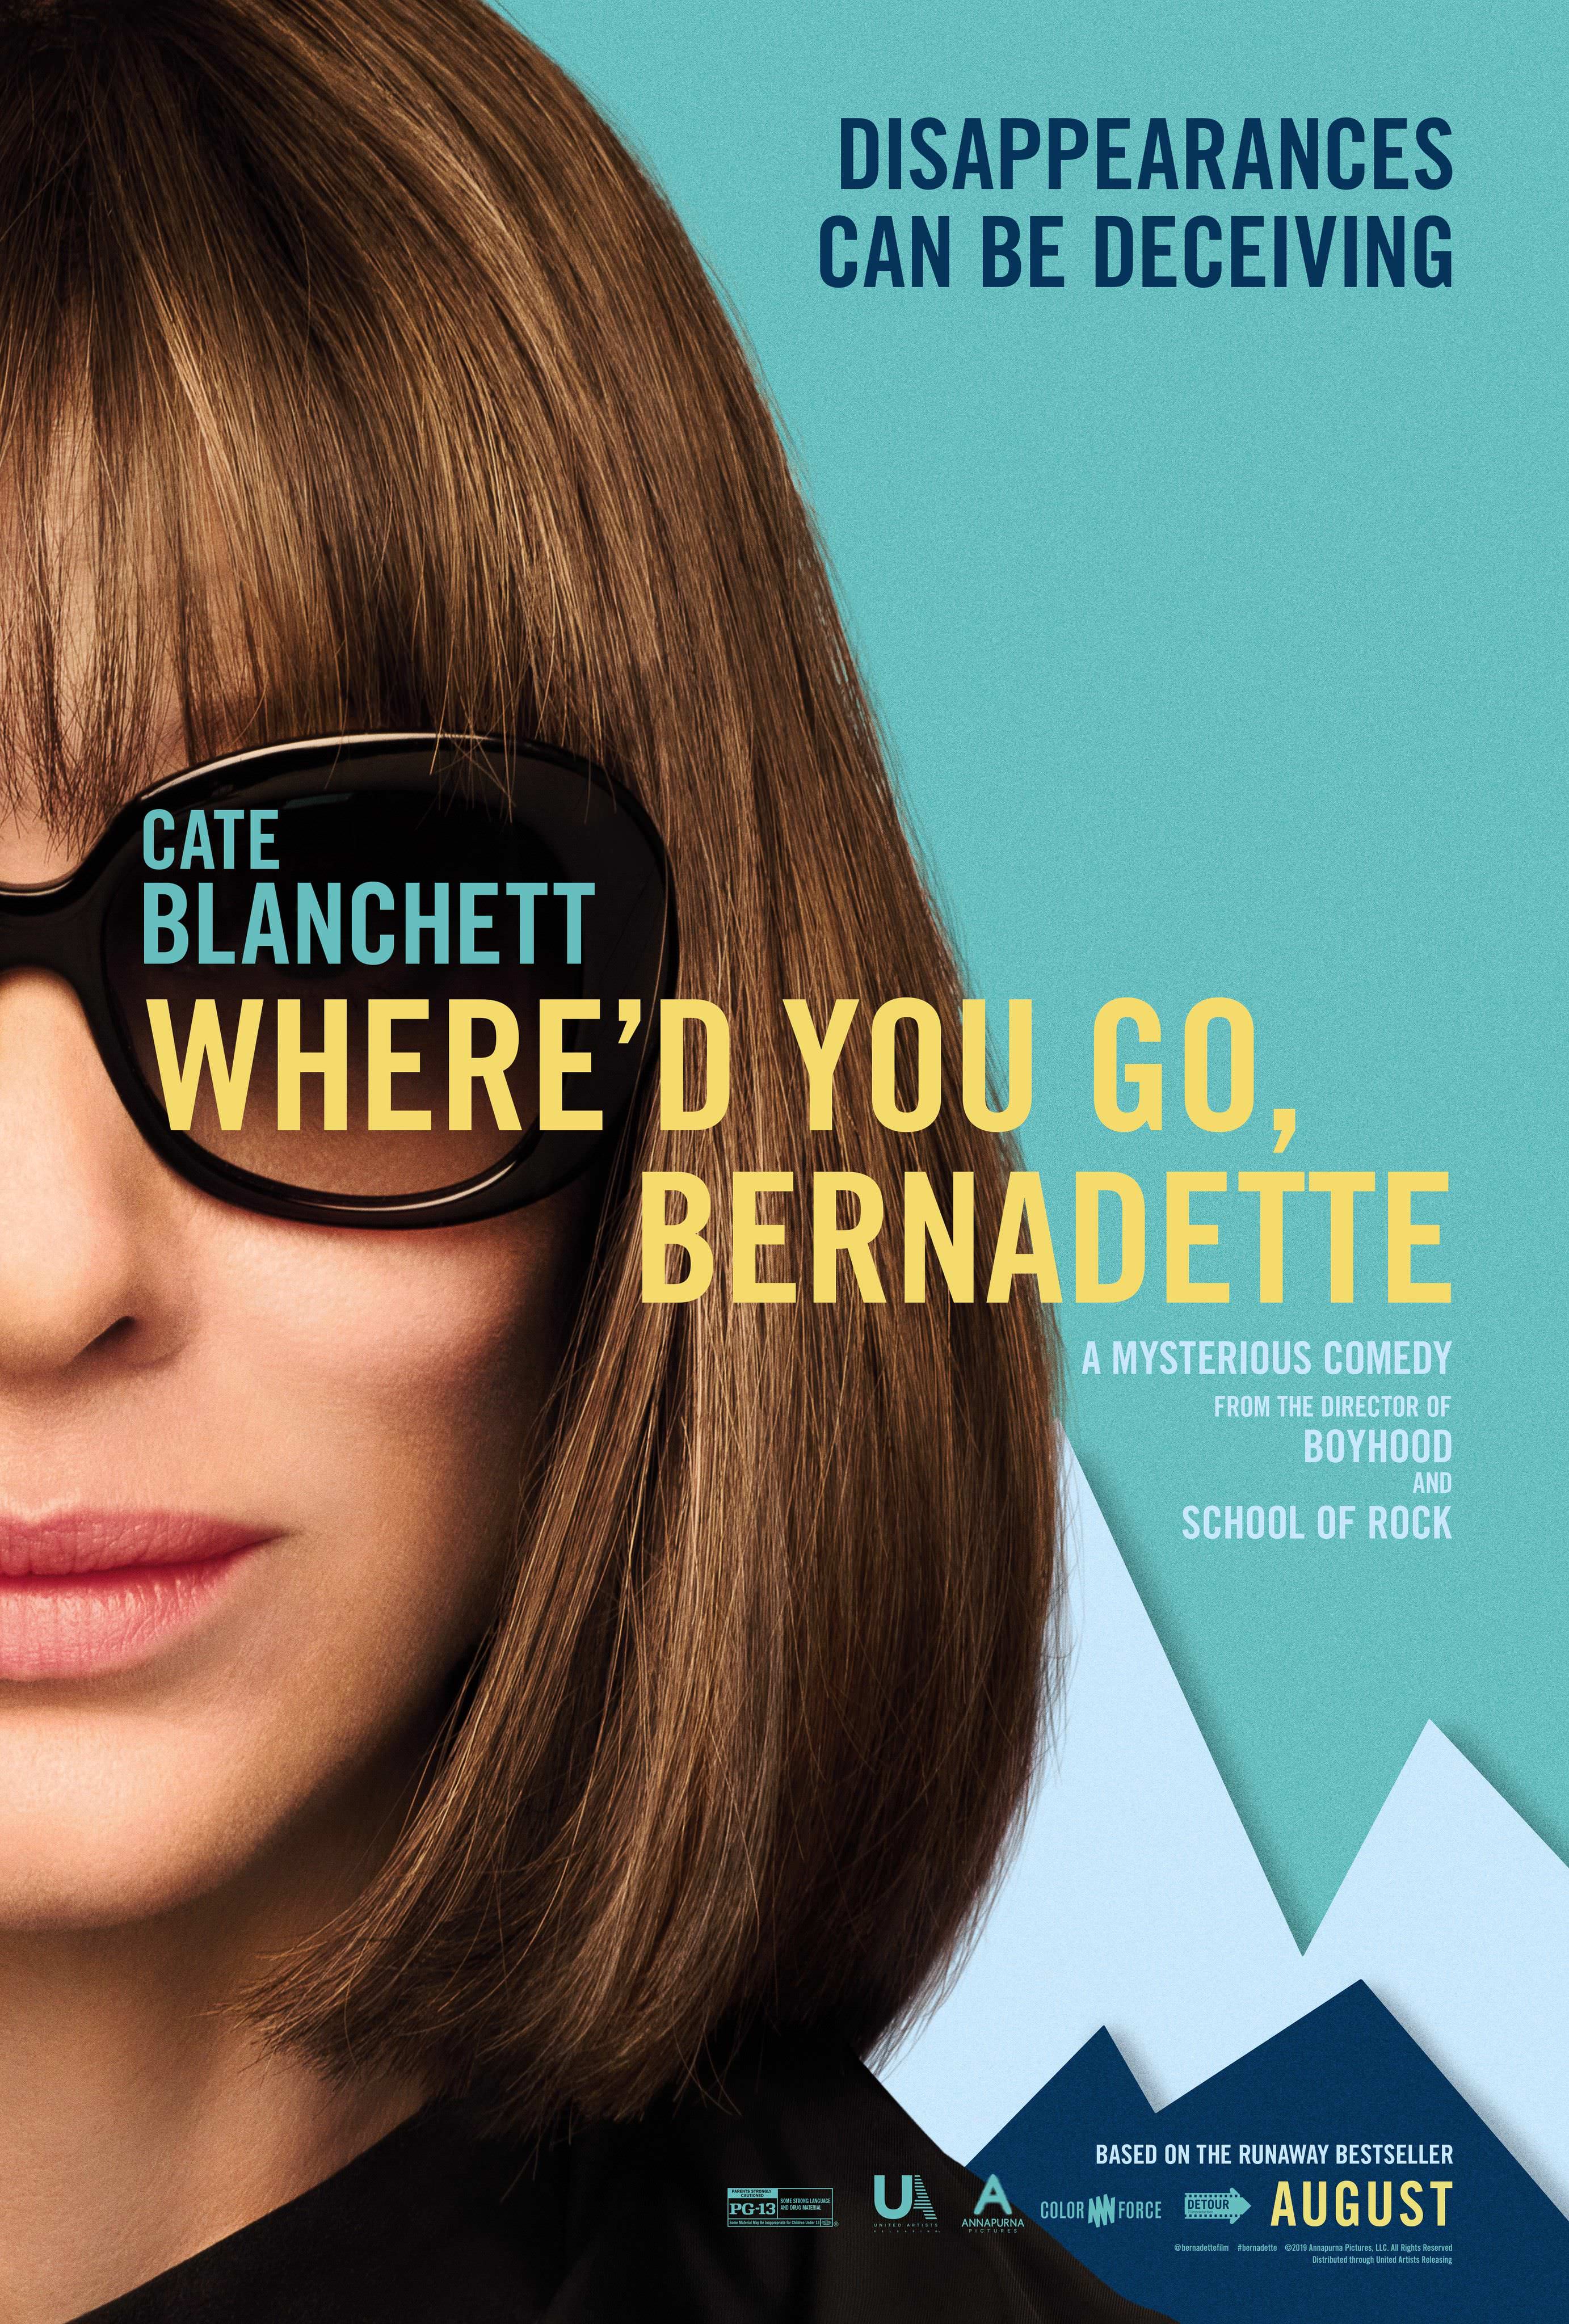 Bernadette a disparu, Richard Linklater